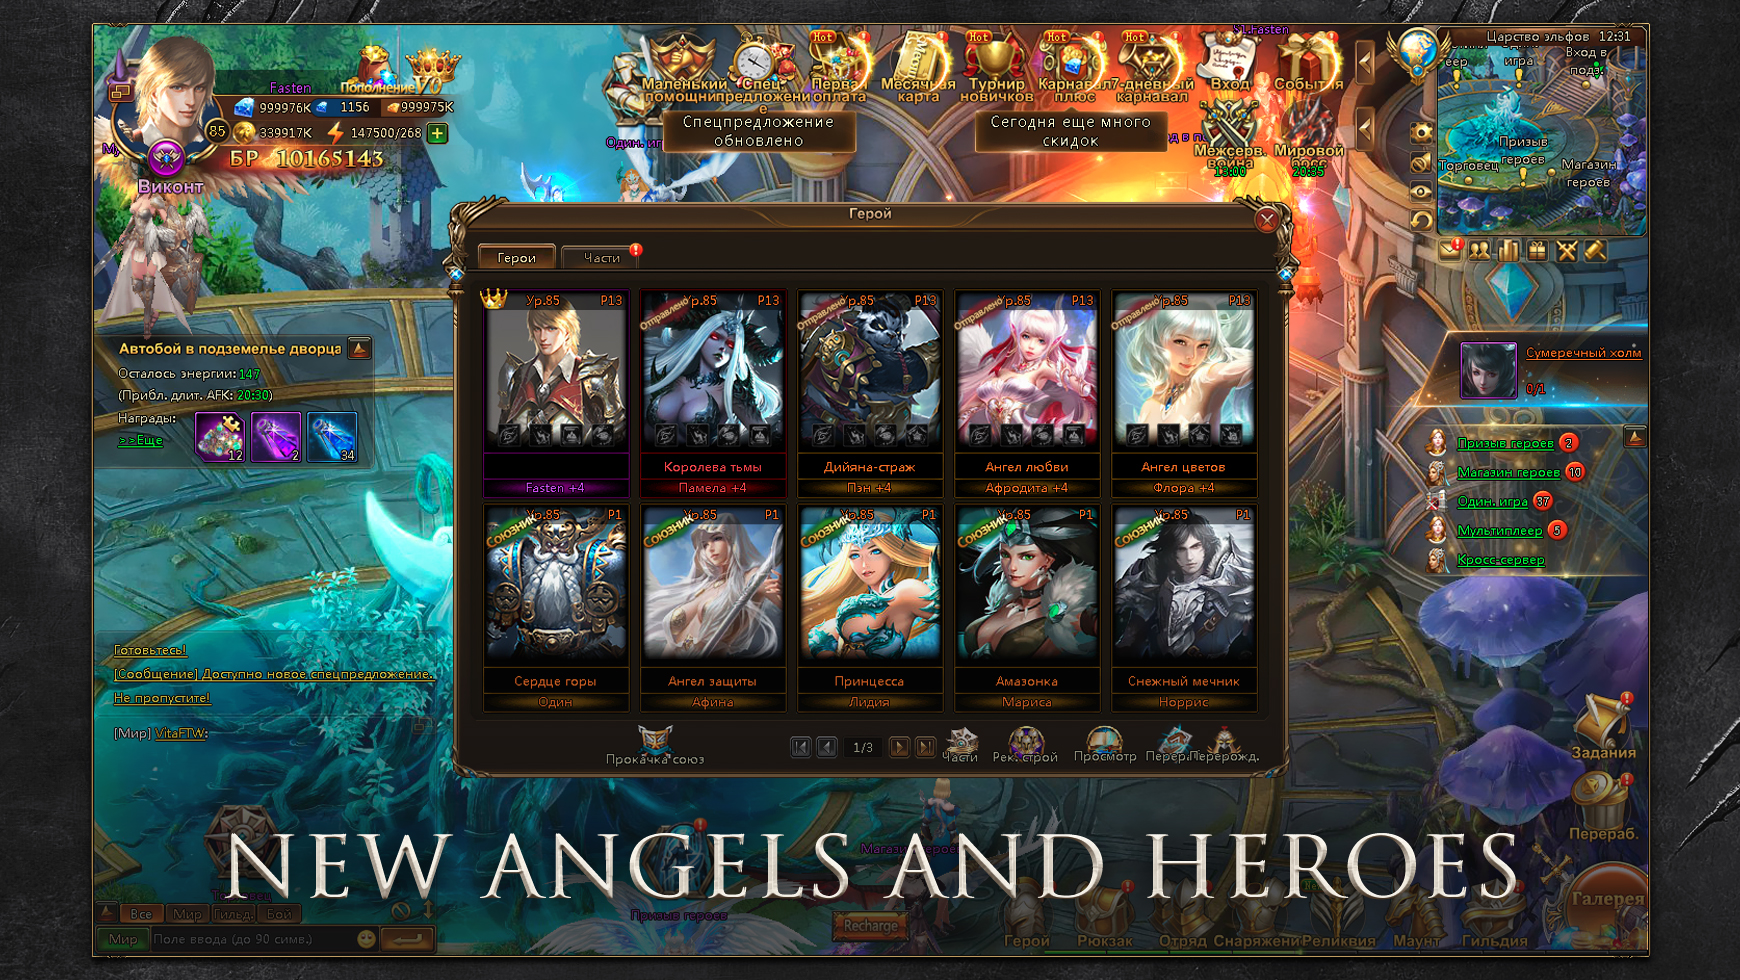 League of Angels II